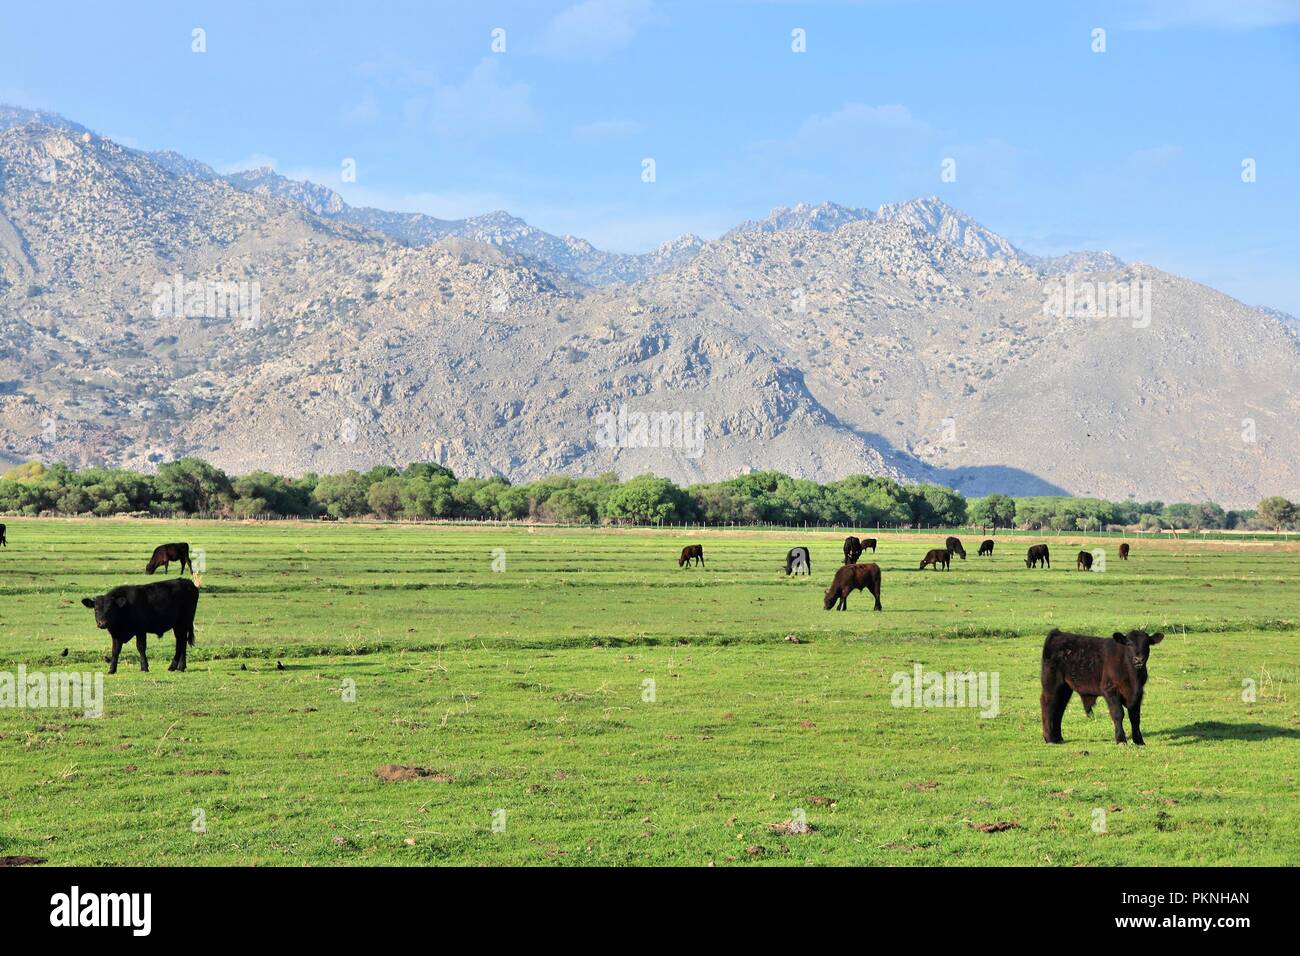 Californie, États-Unis - cattle ranch avec Scodie montagnes en arrière-plan (partie de la Sierra Nevada). Comté de Kern. Banque D'Images